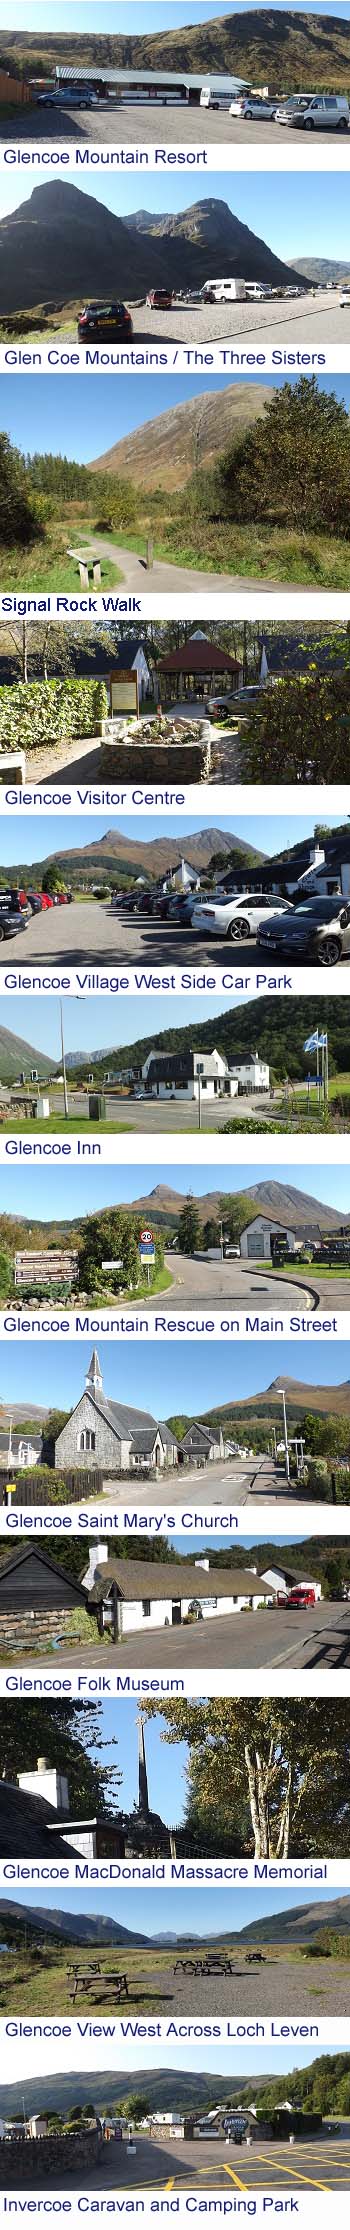 Glencoe Images